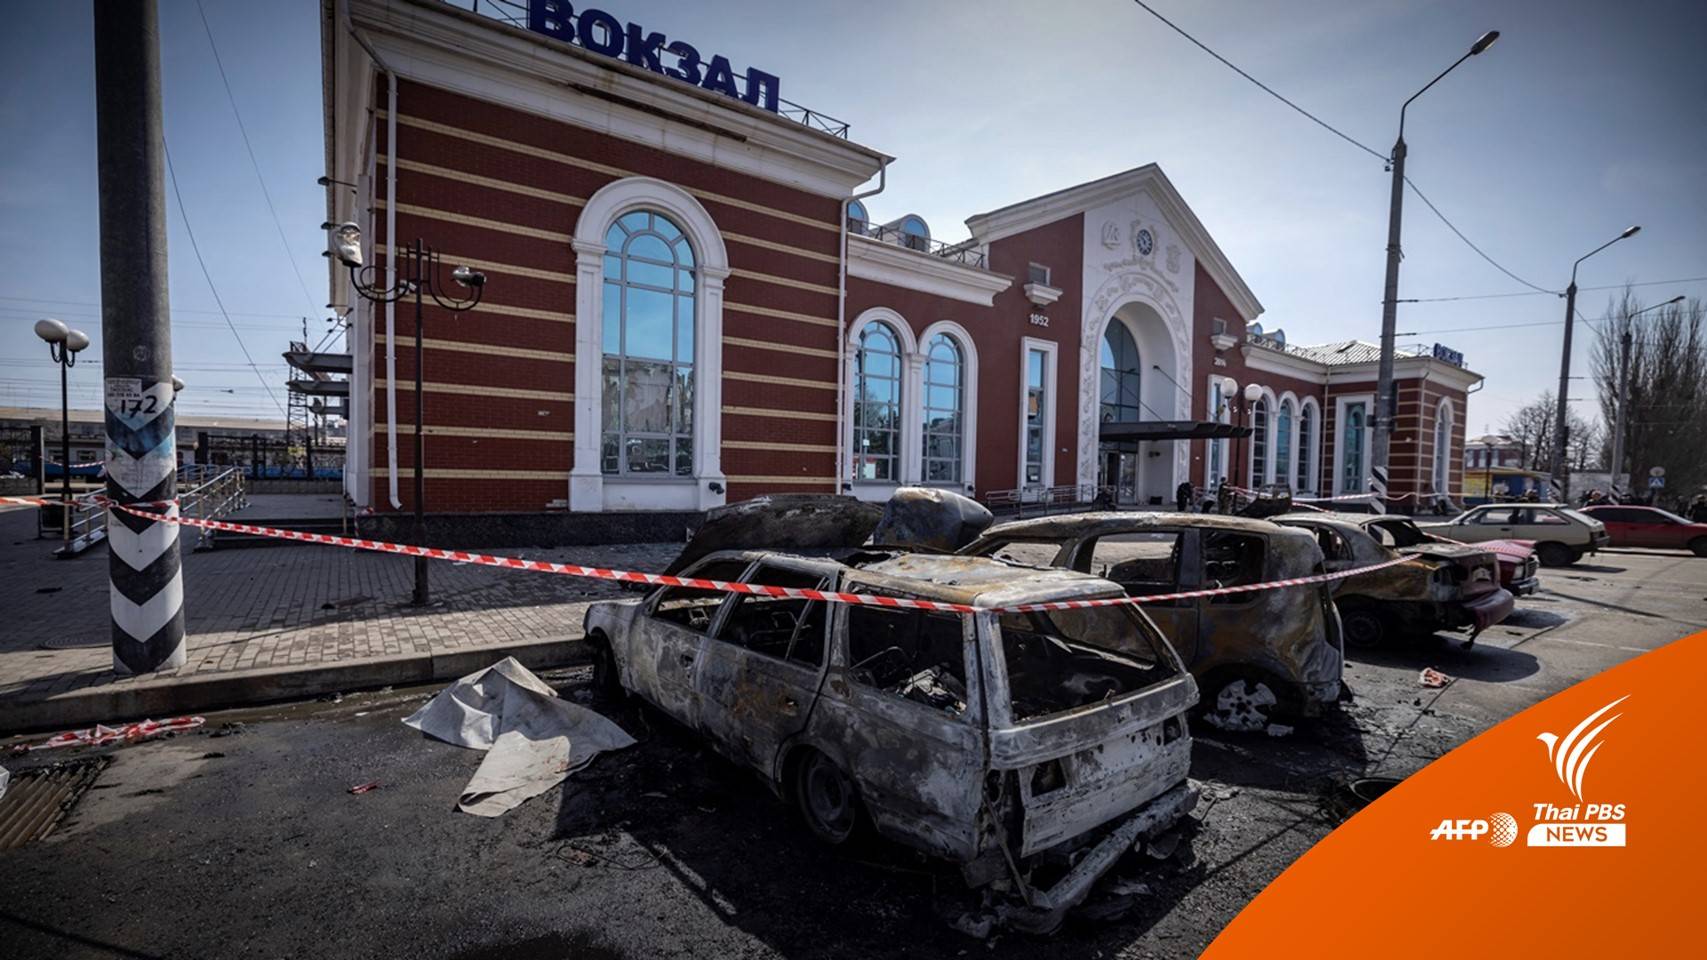 สถานีรถไฟยูเครนถูกขีปนาวุธยิงถล่ม พลเรือนดับกว่า 30 คน